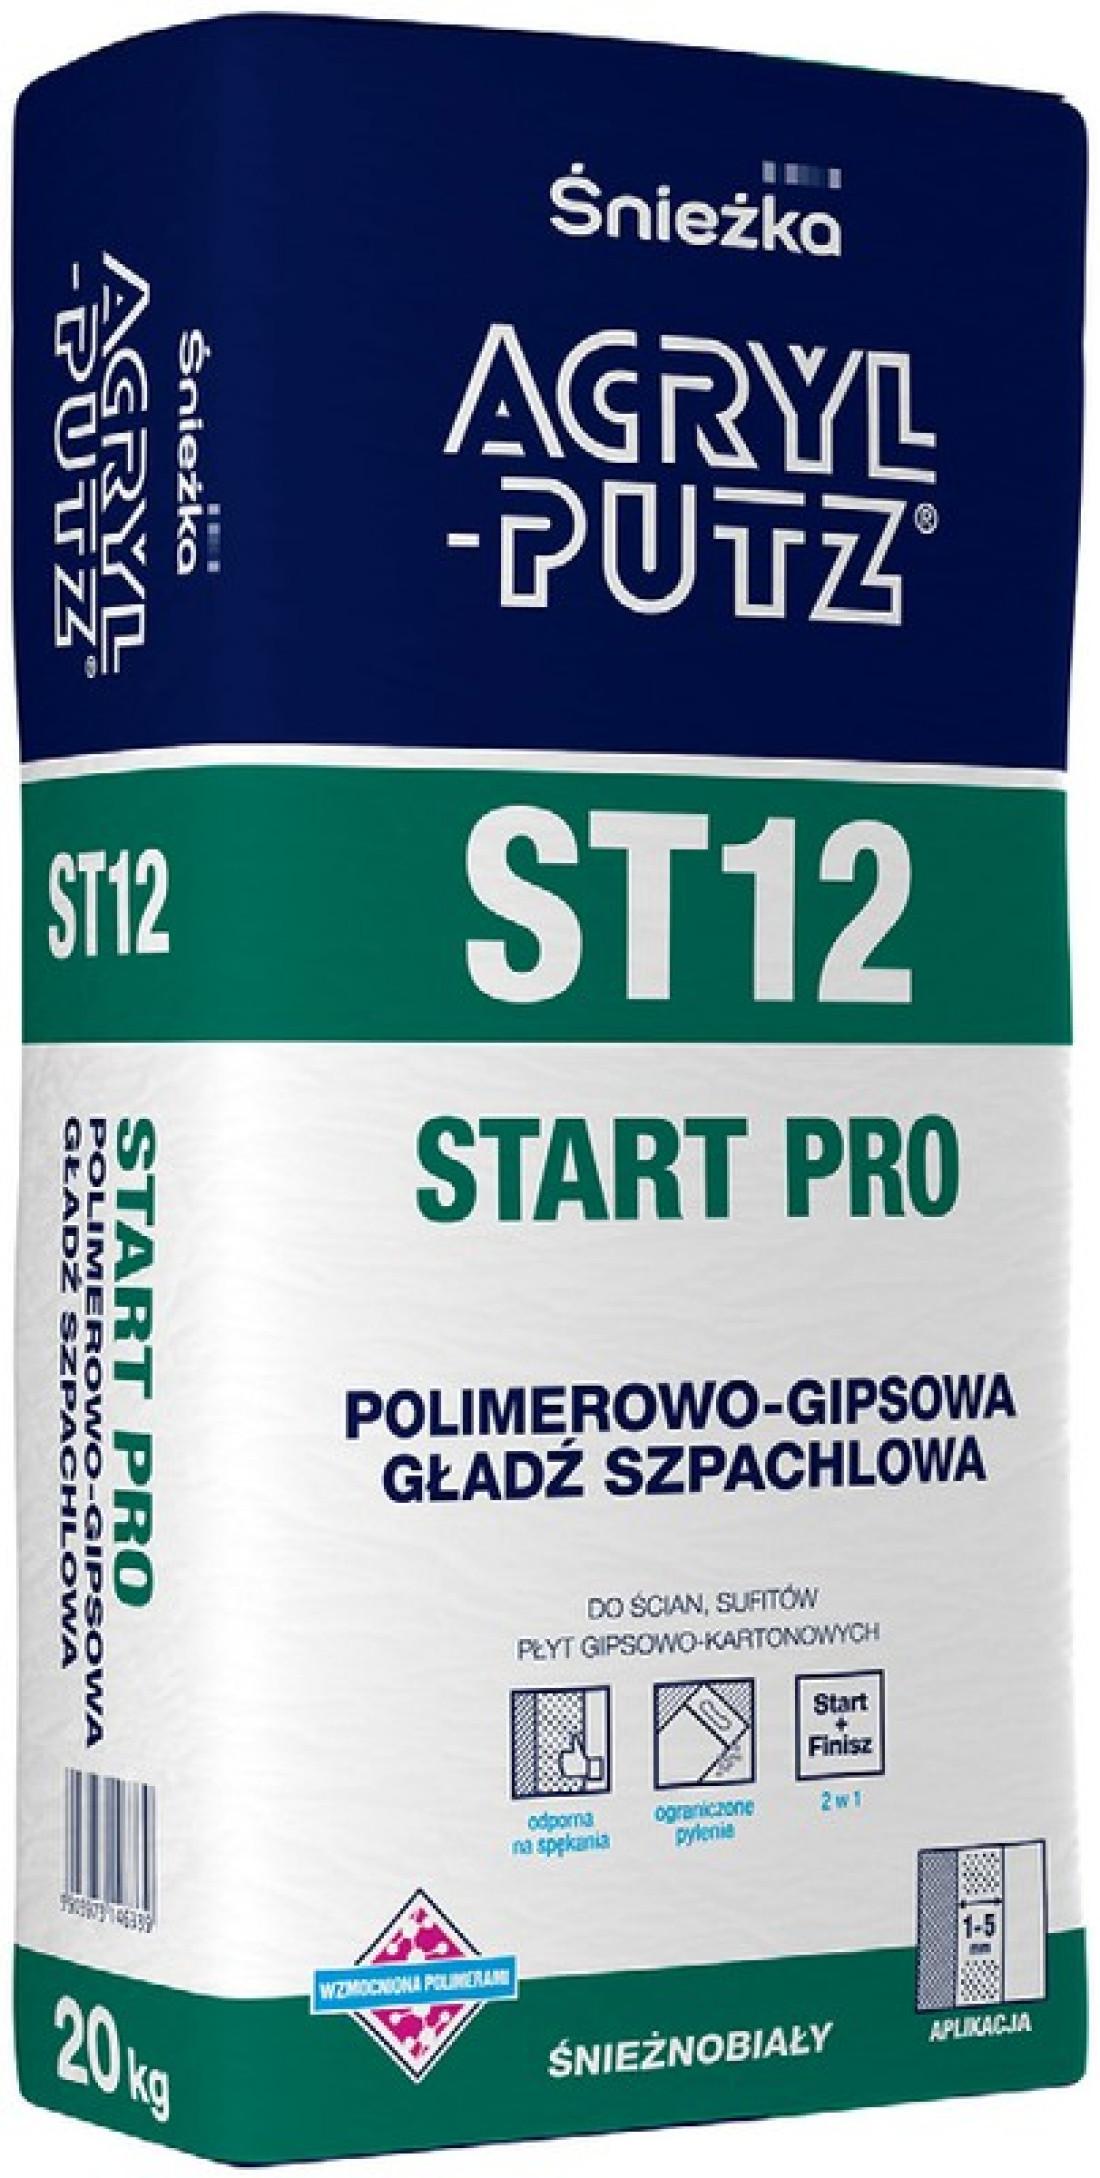 Gładź szpachlowa ACRYL-PUTZ® ST12 PRO - nowa jakość szlifowania